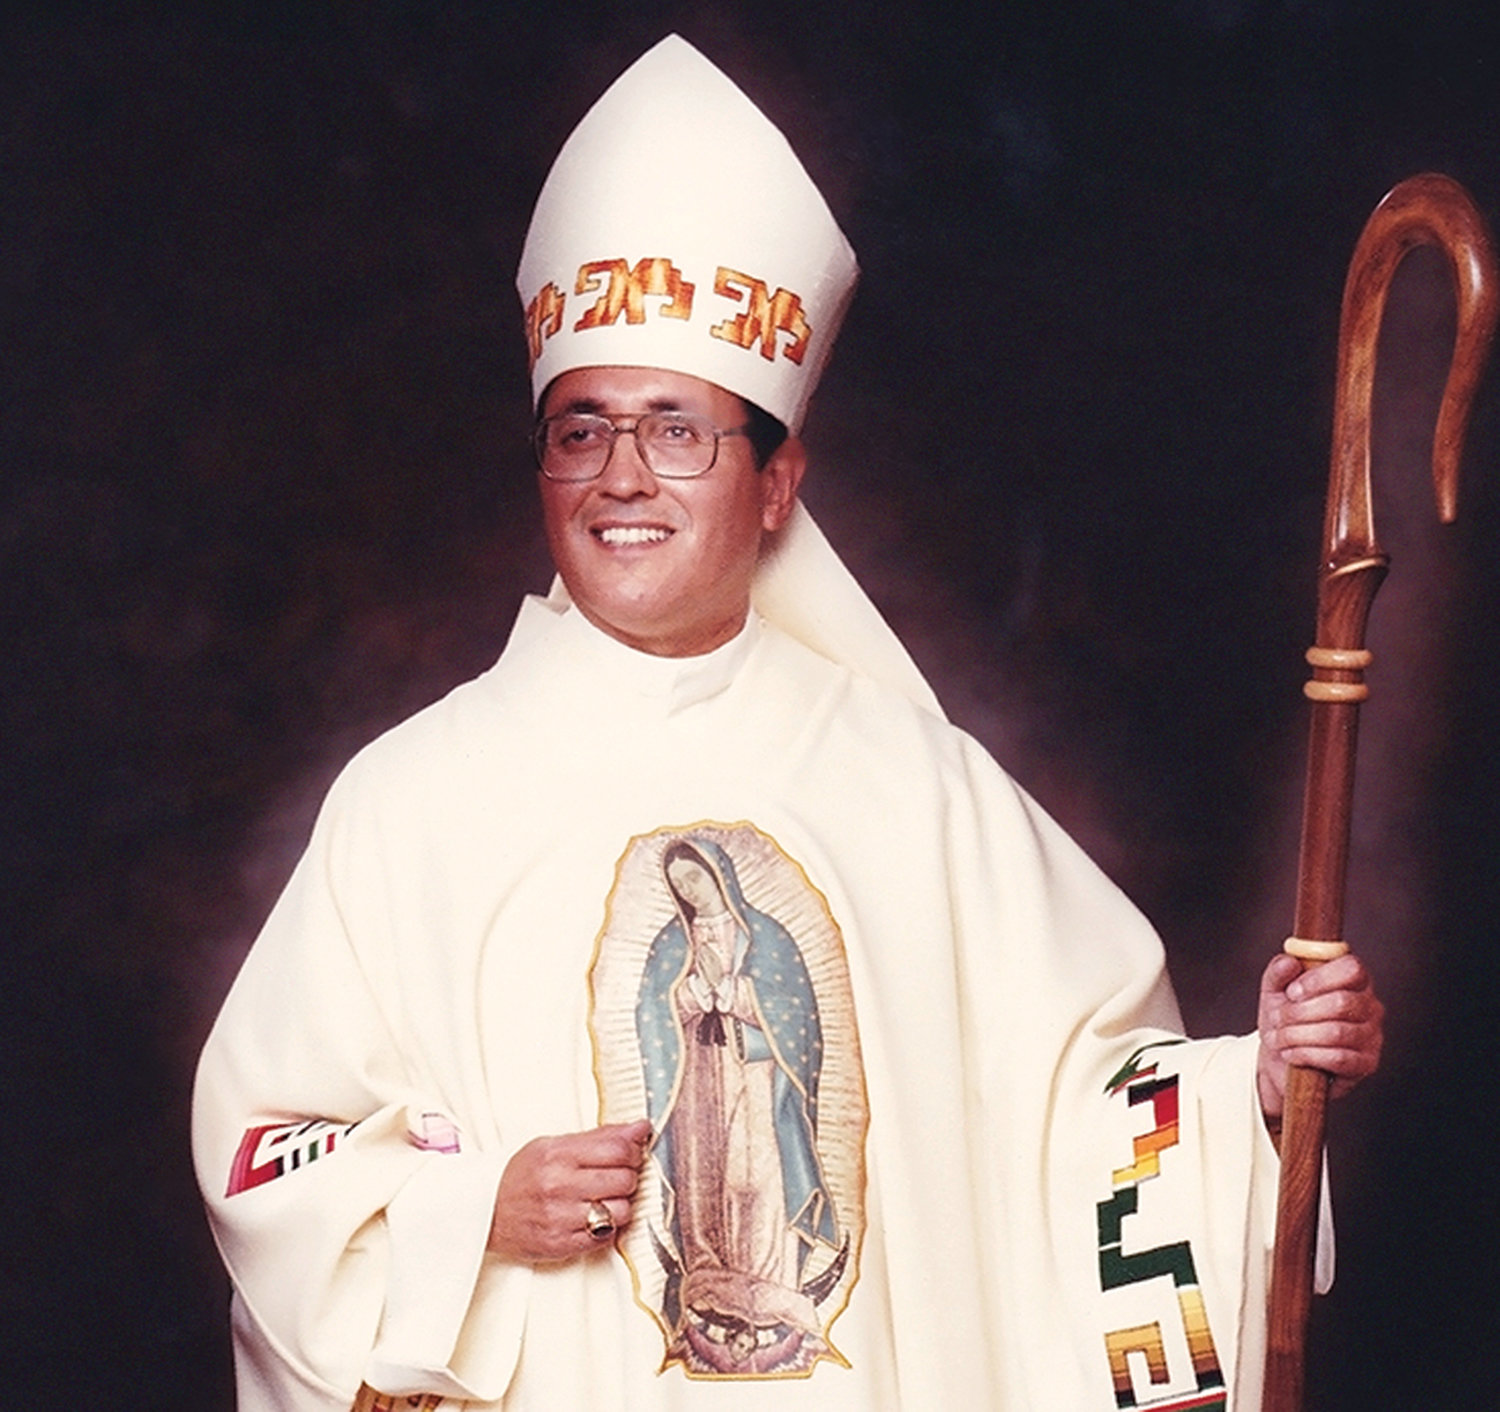 El obispo auxiliar Alphonse Gallegos, O.A.R., de Sacramento fue declarado venerable en 2016 por el papa Francisco. Ordenado sacerdote en la Orden de los Agustinos Recoletos, él fue conocido como el “obispo de los barrios.”  Su causa de canonización se inició en 2005. Despues de algunos años en el sacerdocio, él celebraba misa en la parroquia del Sagrado Corazón en Suffern cuando fue asignado al monasterio de Tagaste.